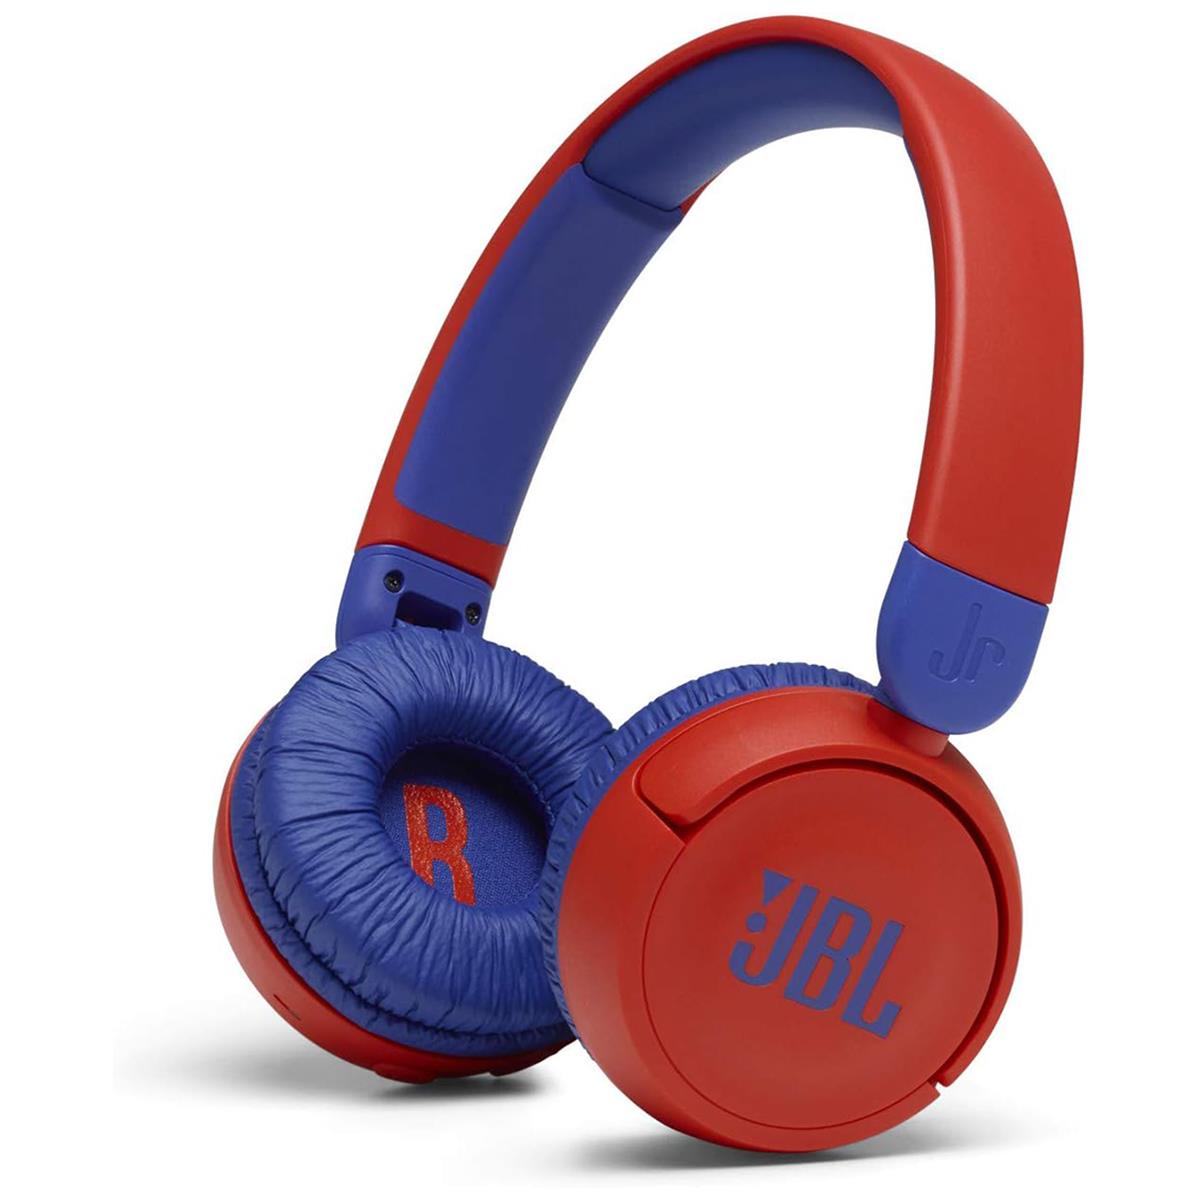 Image of JBL JR310BT Wireless Closed-Back On-Ear Kids Headphones